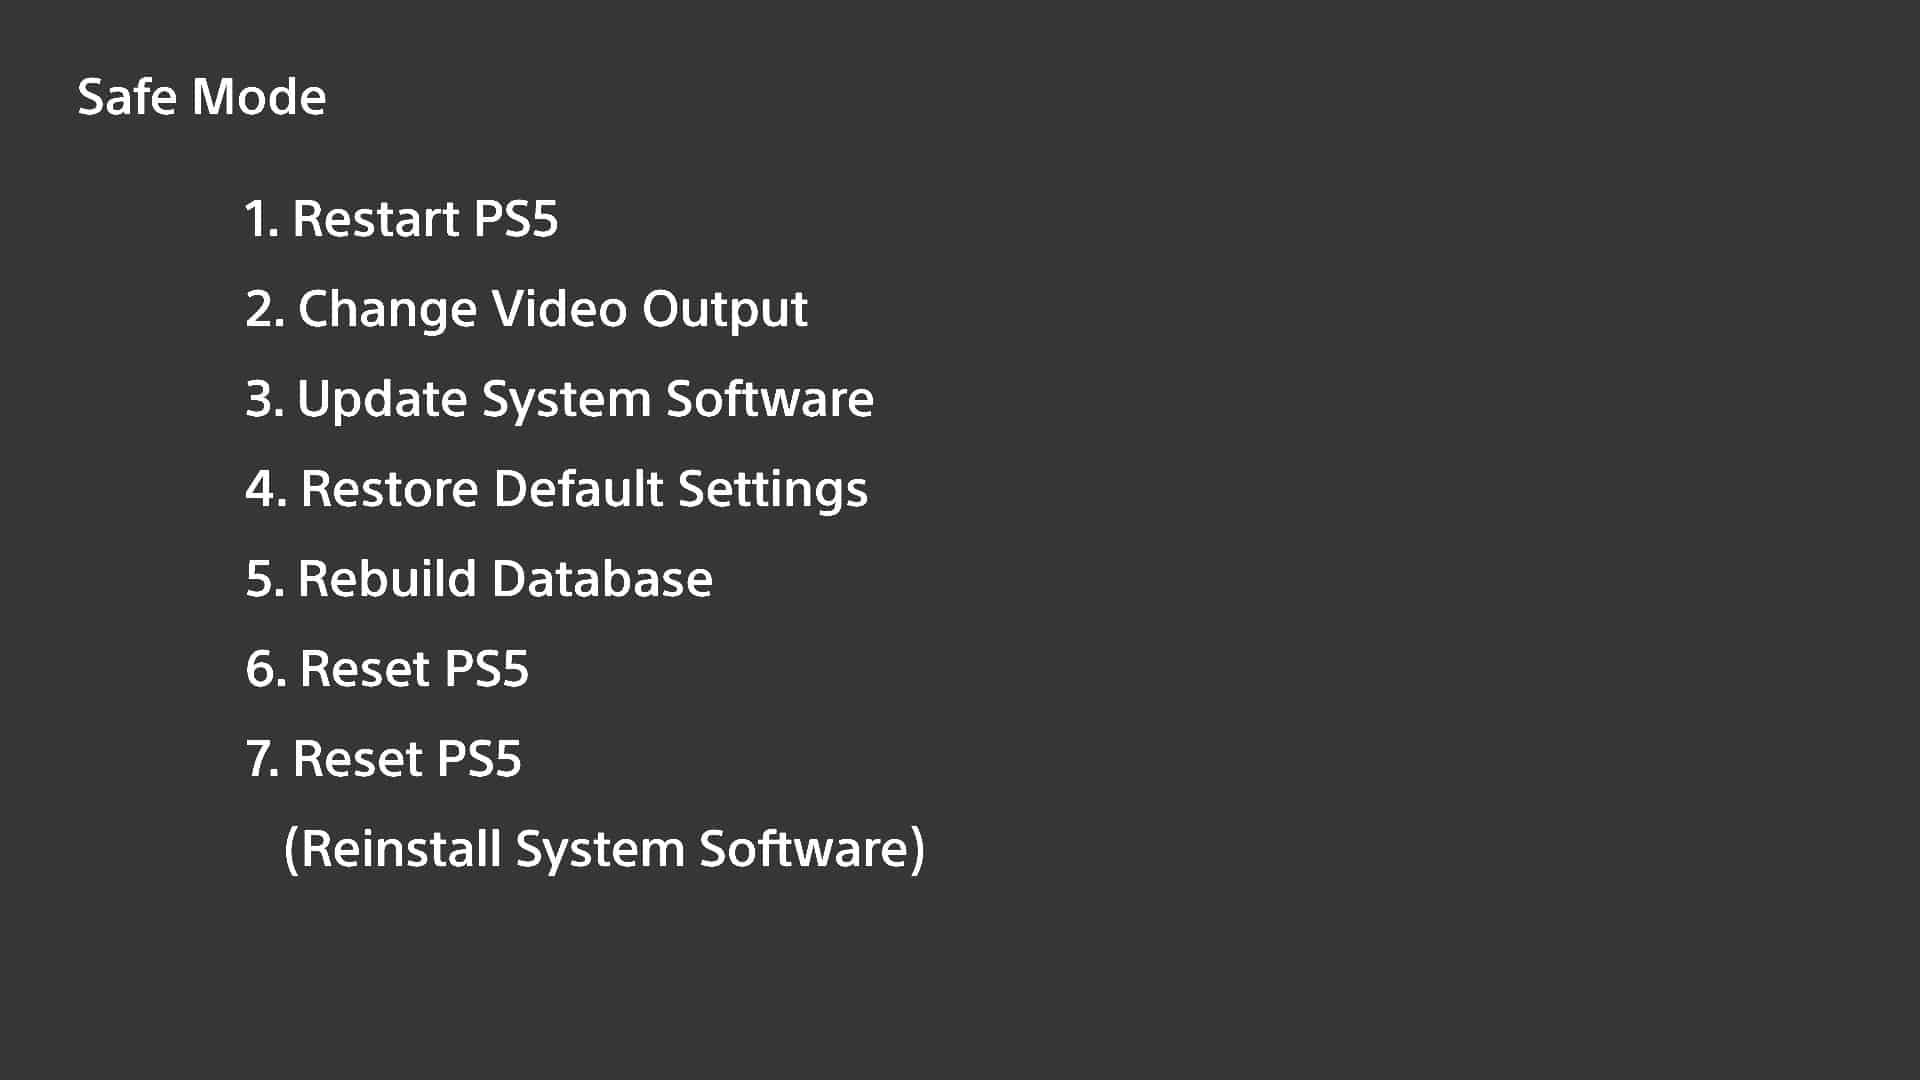 ps5 актуализира системния софтуер в безопасен режим